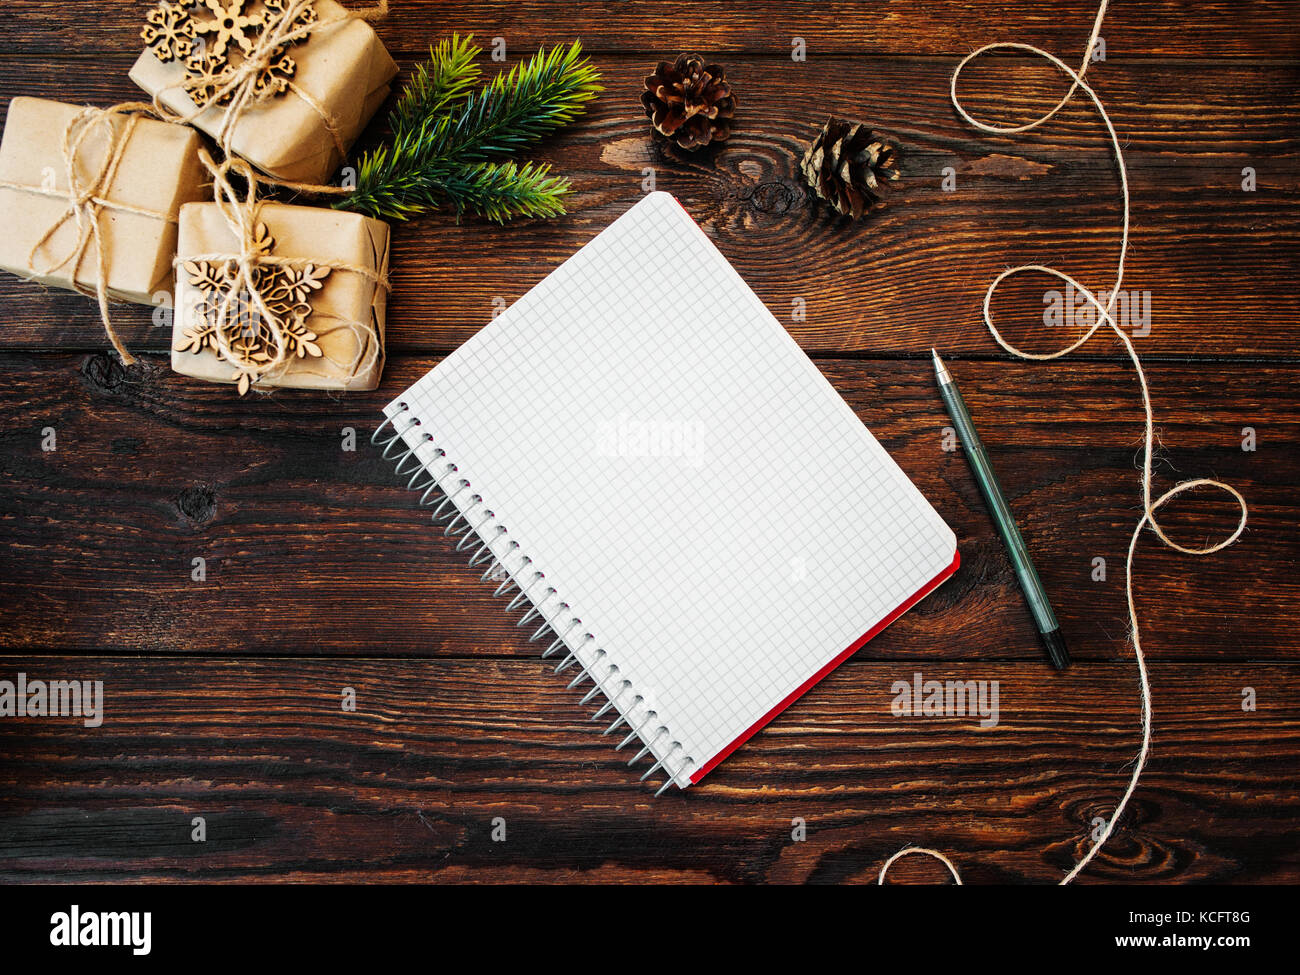 Weihnachten Zusammensetzung der Geschenk Kraftpapier Boxen und Holzspielzeug, Mais und Hinweis mit Stift auf hölzernen Hintergrund Stockfoto